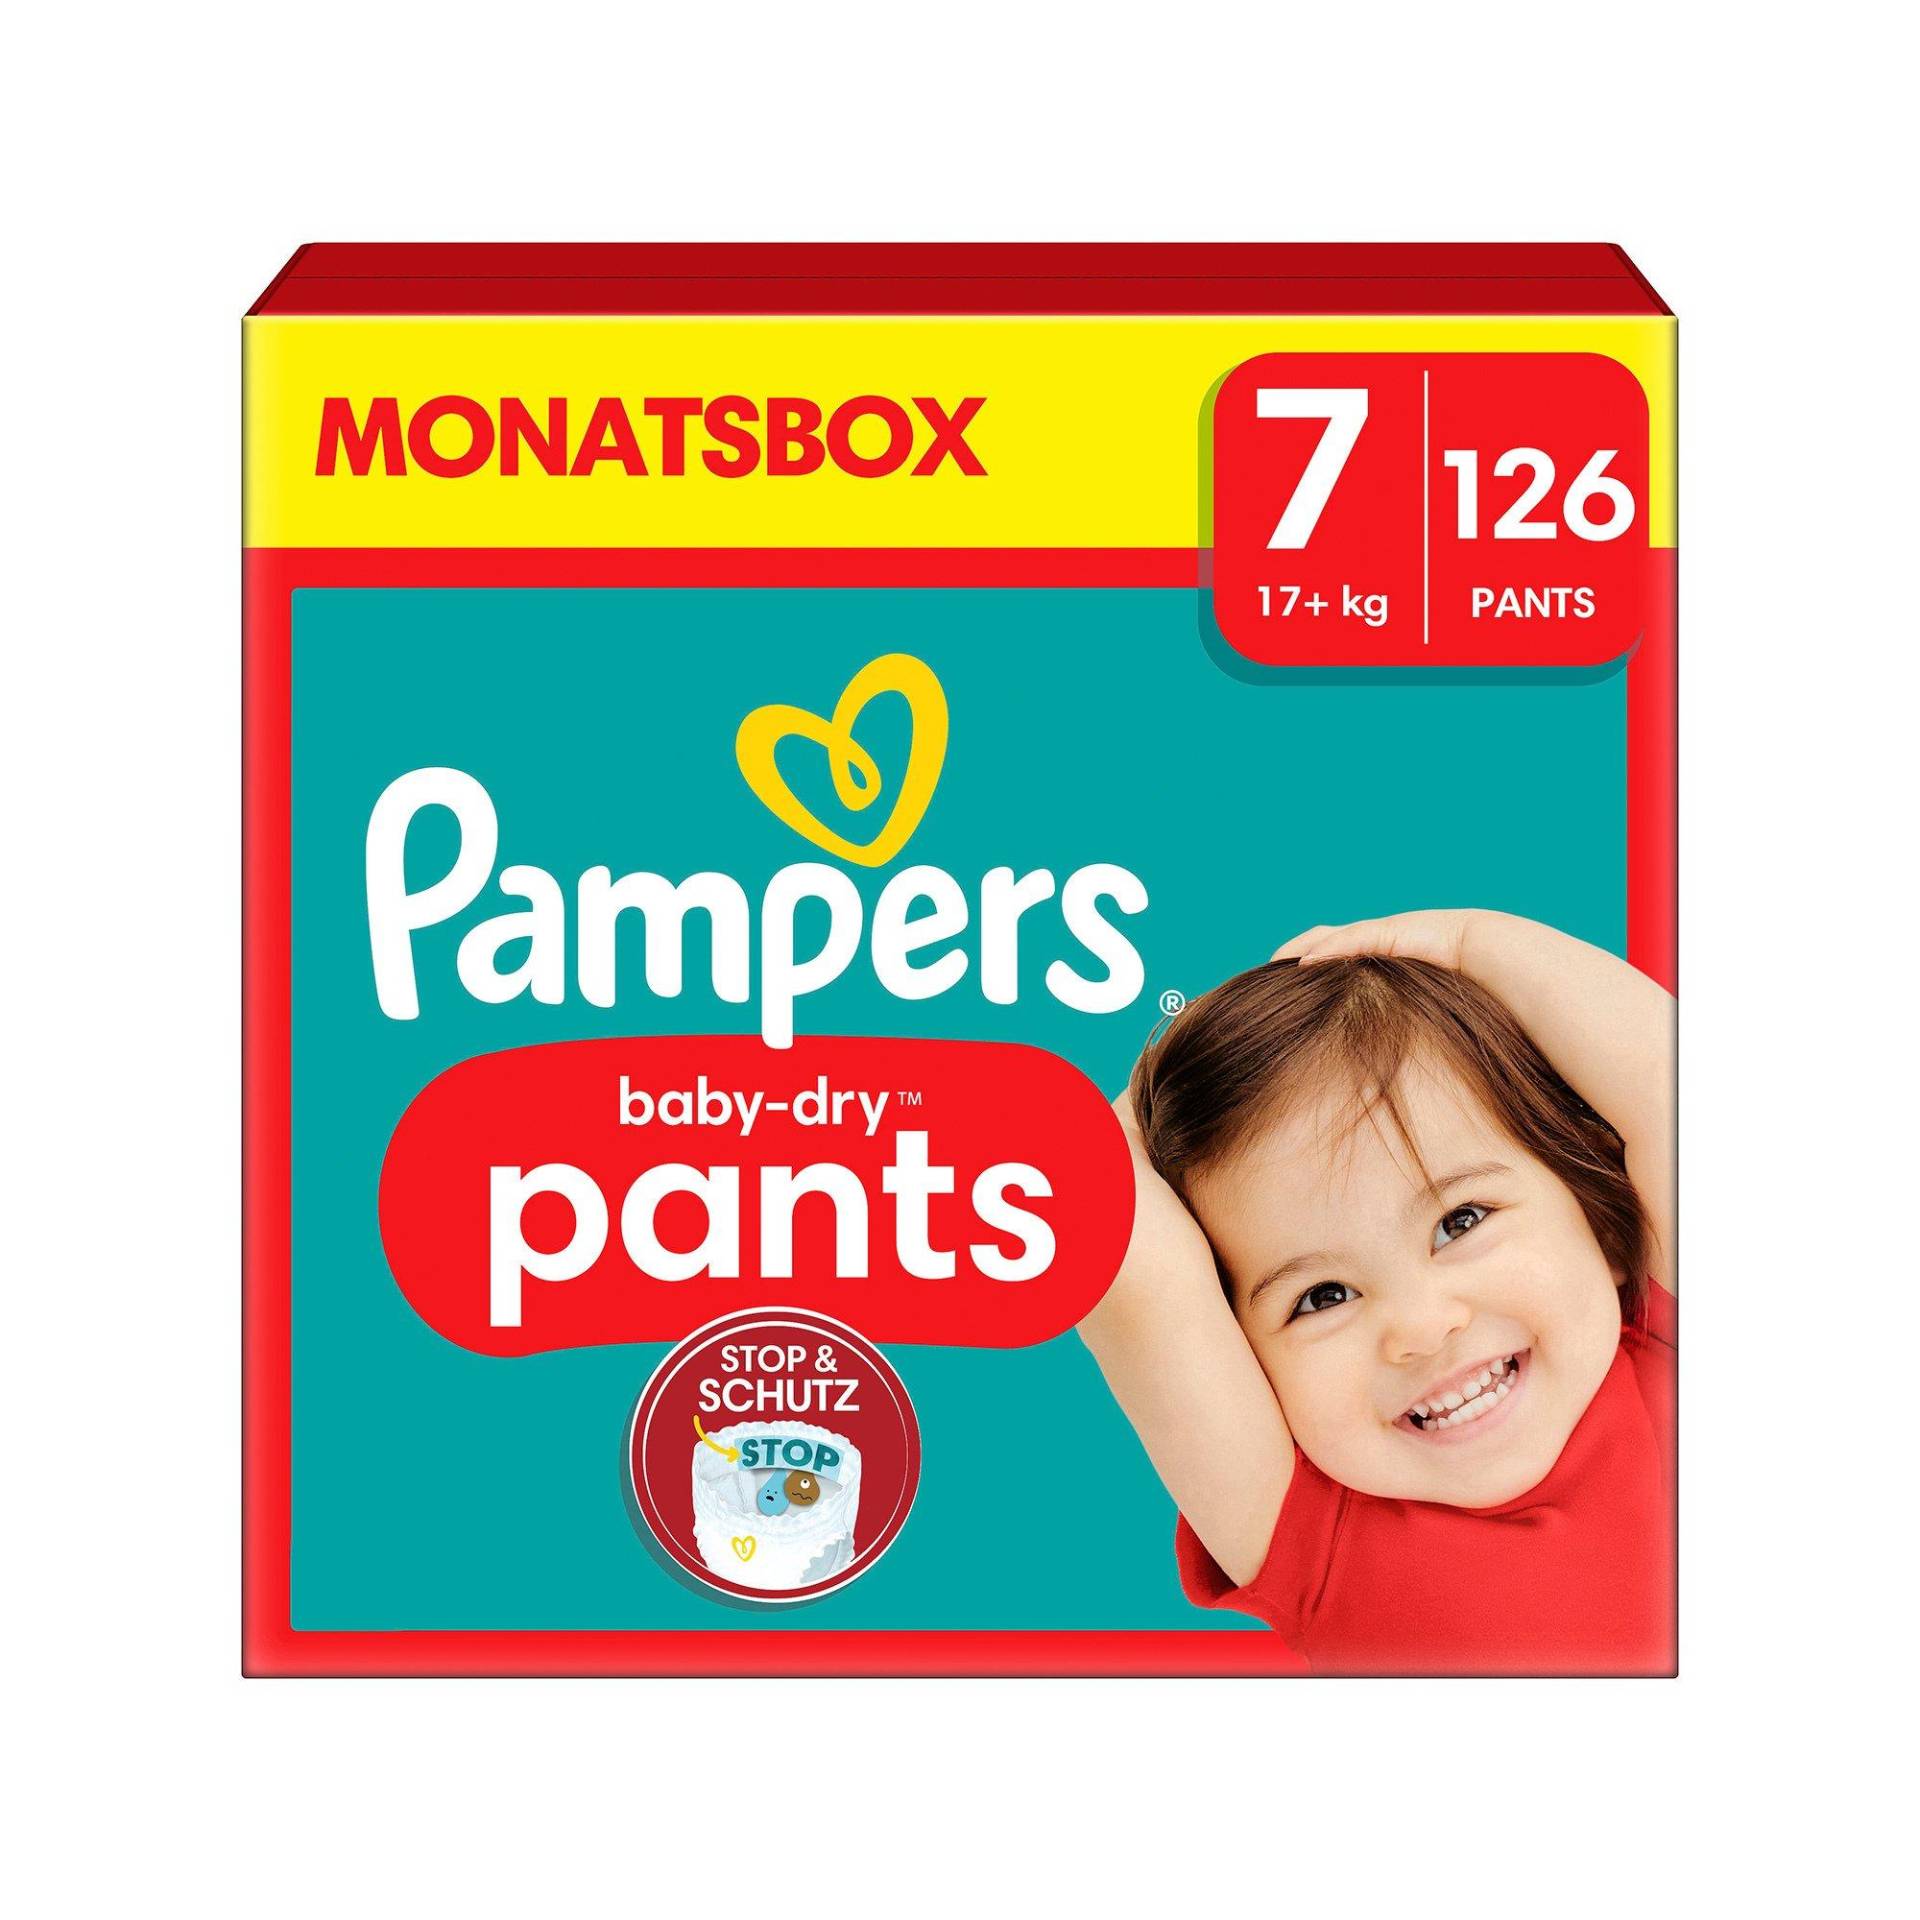 Baby-dry Pants Grösse 7, Monatsbox Damen  126STK von Pampers